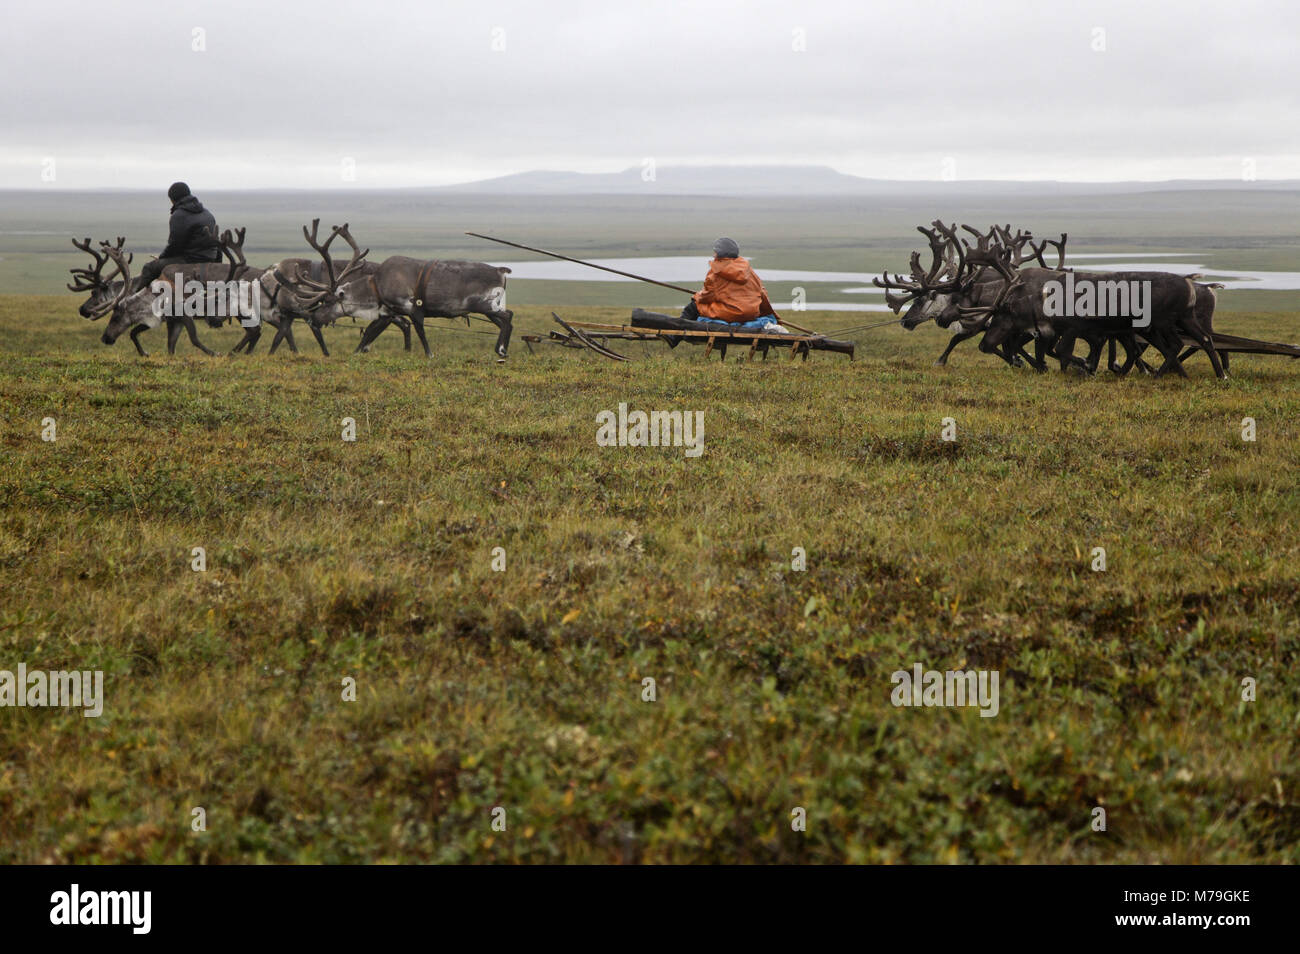 Asia, Russia, Siberia, region of Krasnojarsk, Taimyr peninsula, reindeer slide, tundra, ride, reindeer nomads, Stock Photo